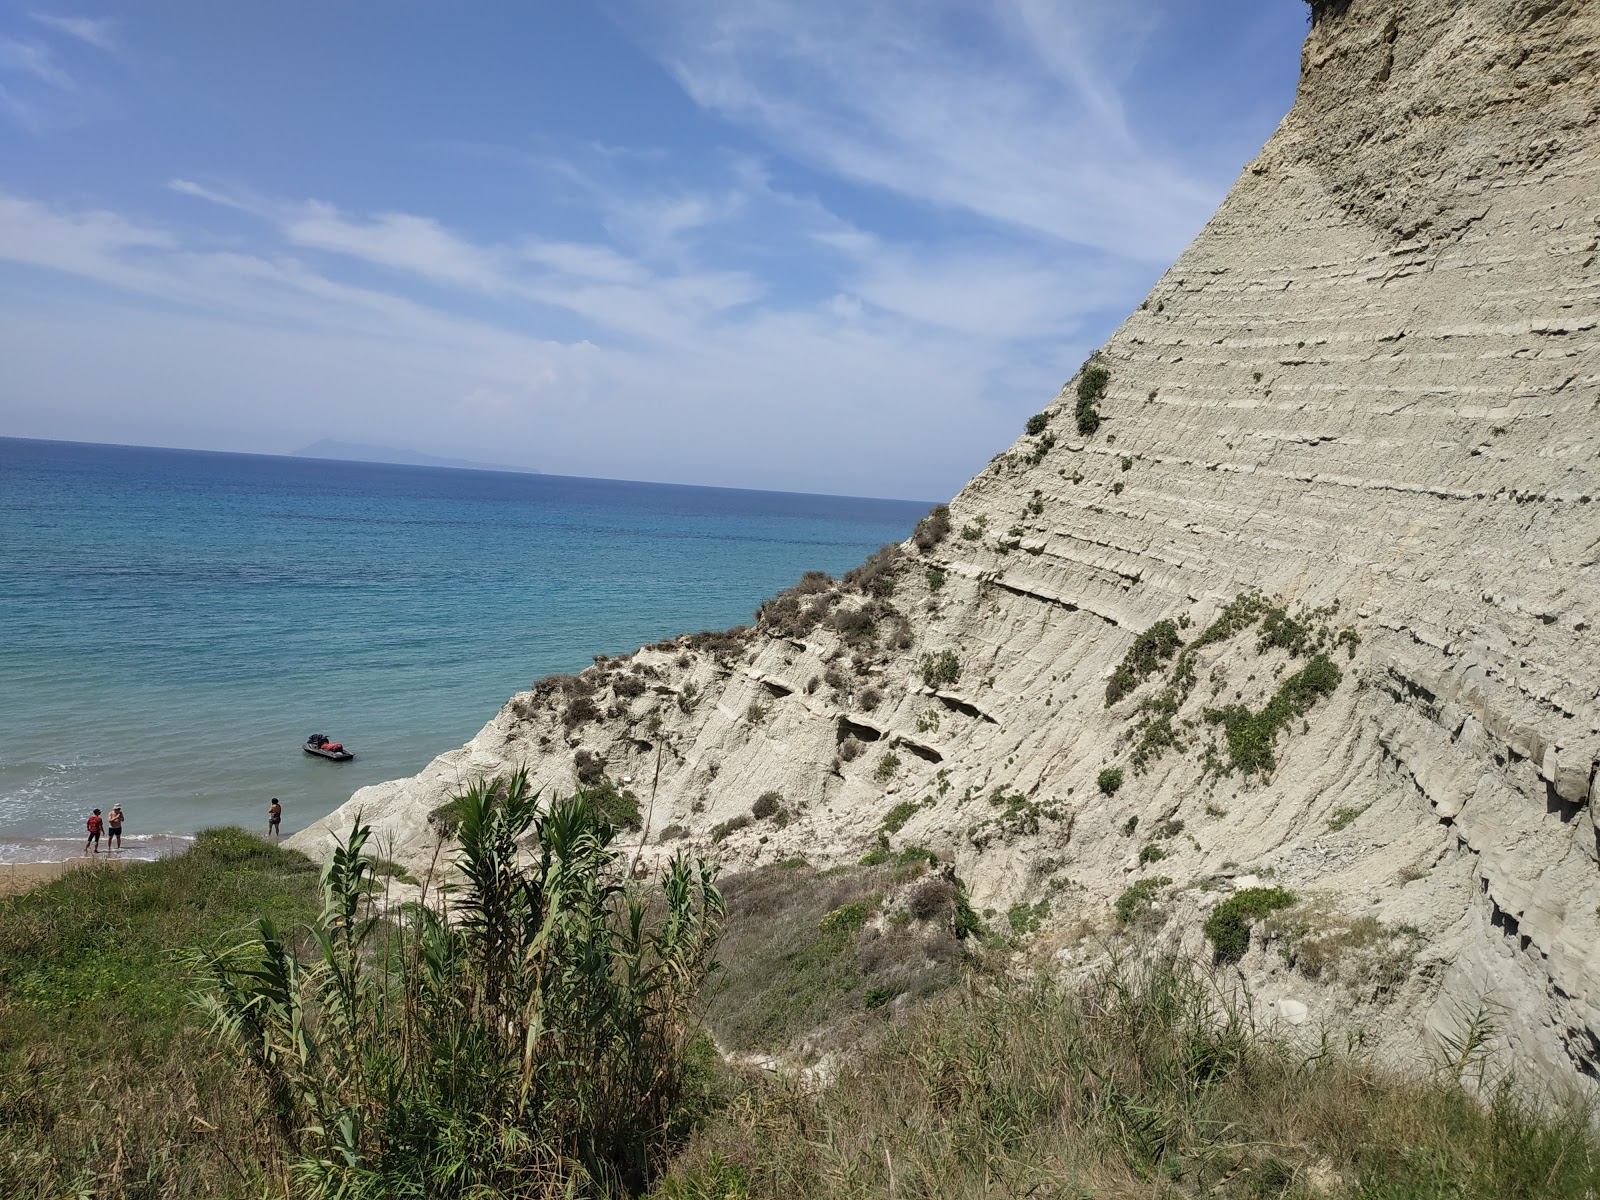 Photo de Katevasidi beach - endroit populaire parmi les connaisseurs de la détente